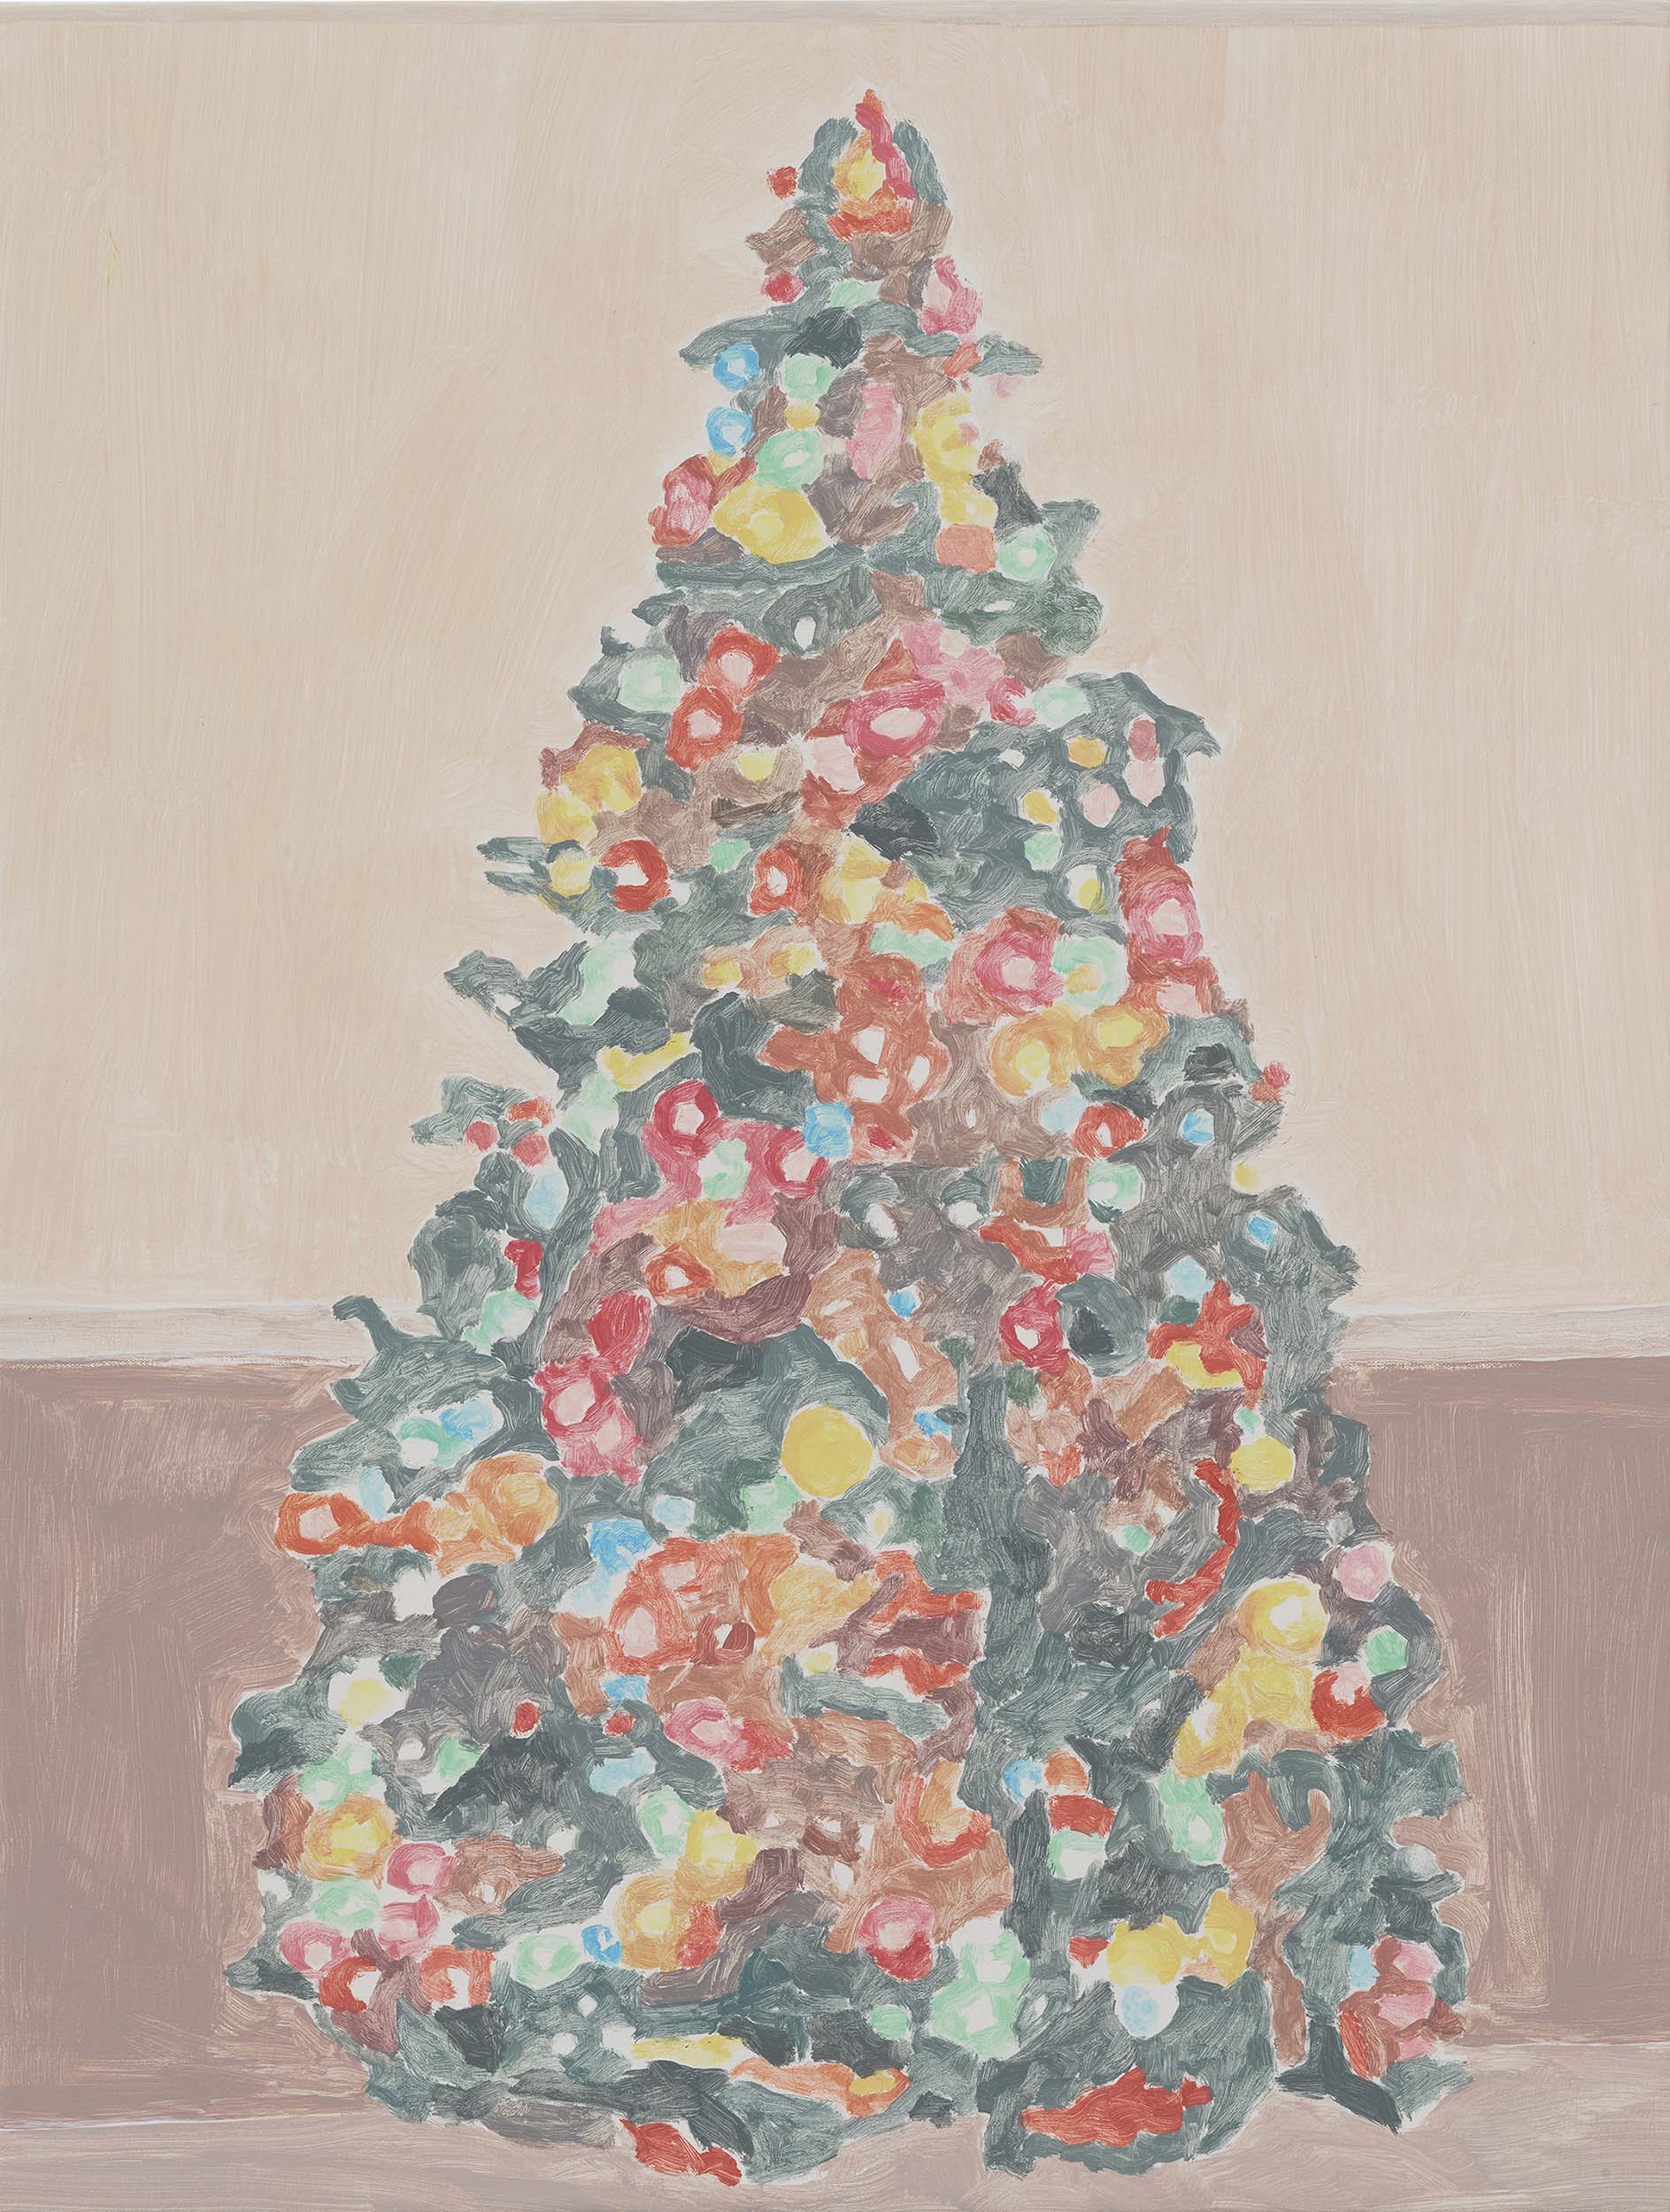  Xmas Tree (wainscot), acrylic on canvas, 32 x 24.25 inches, 2015. 